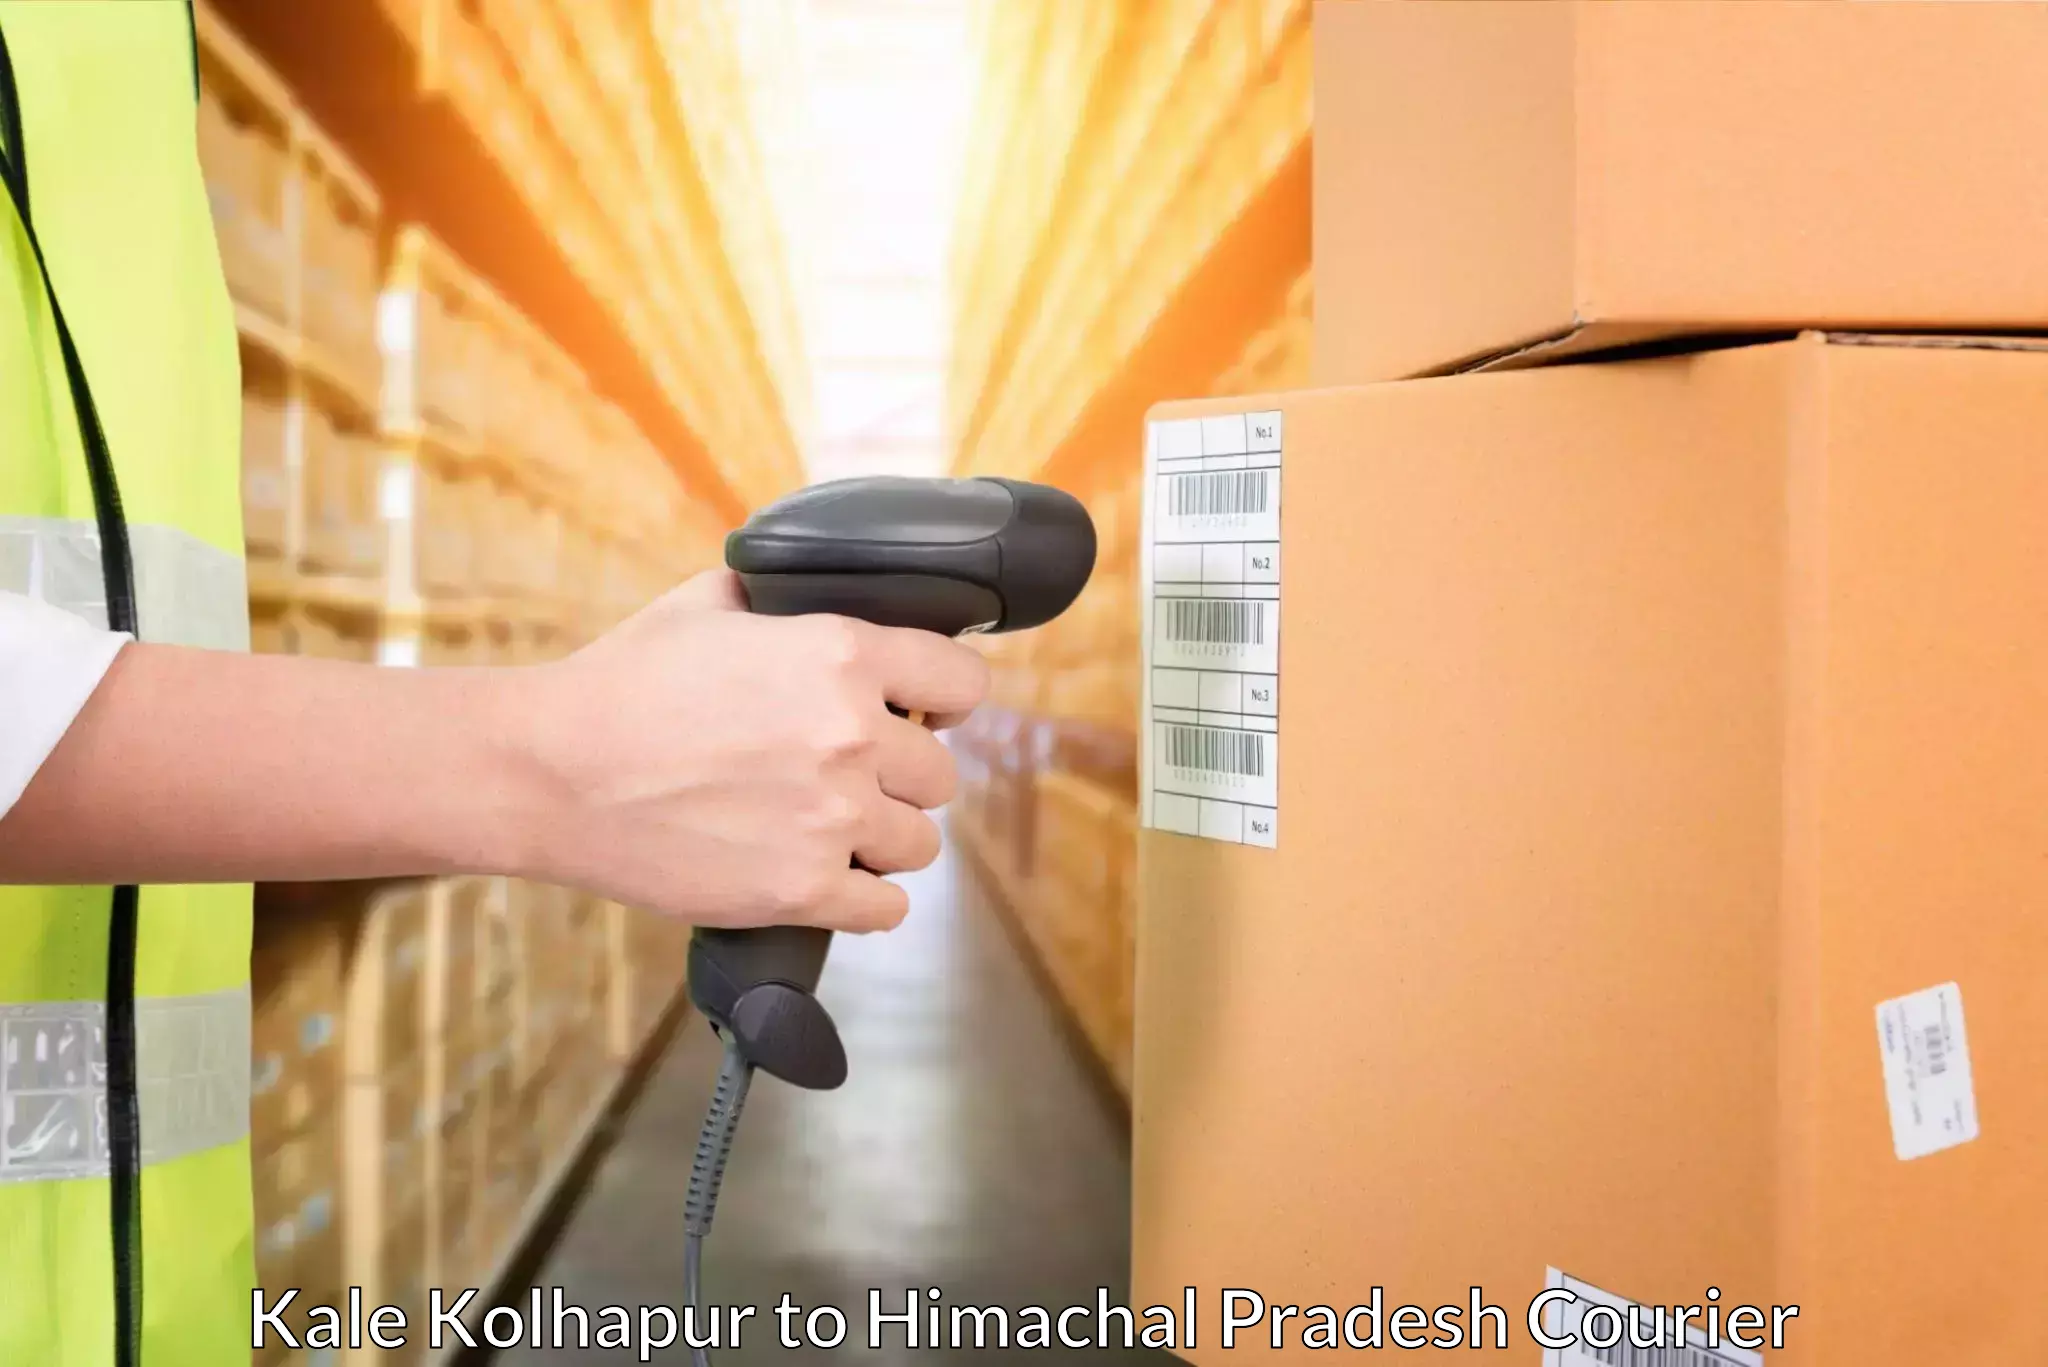 Courier service comparison Kale Kolhapur to Darlaghat